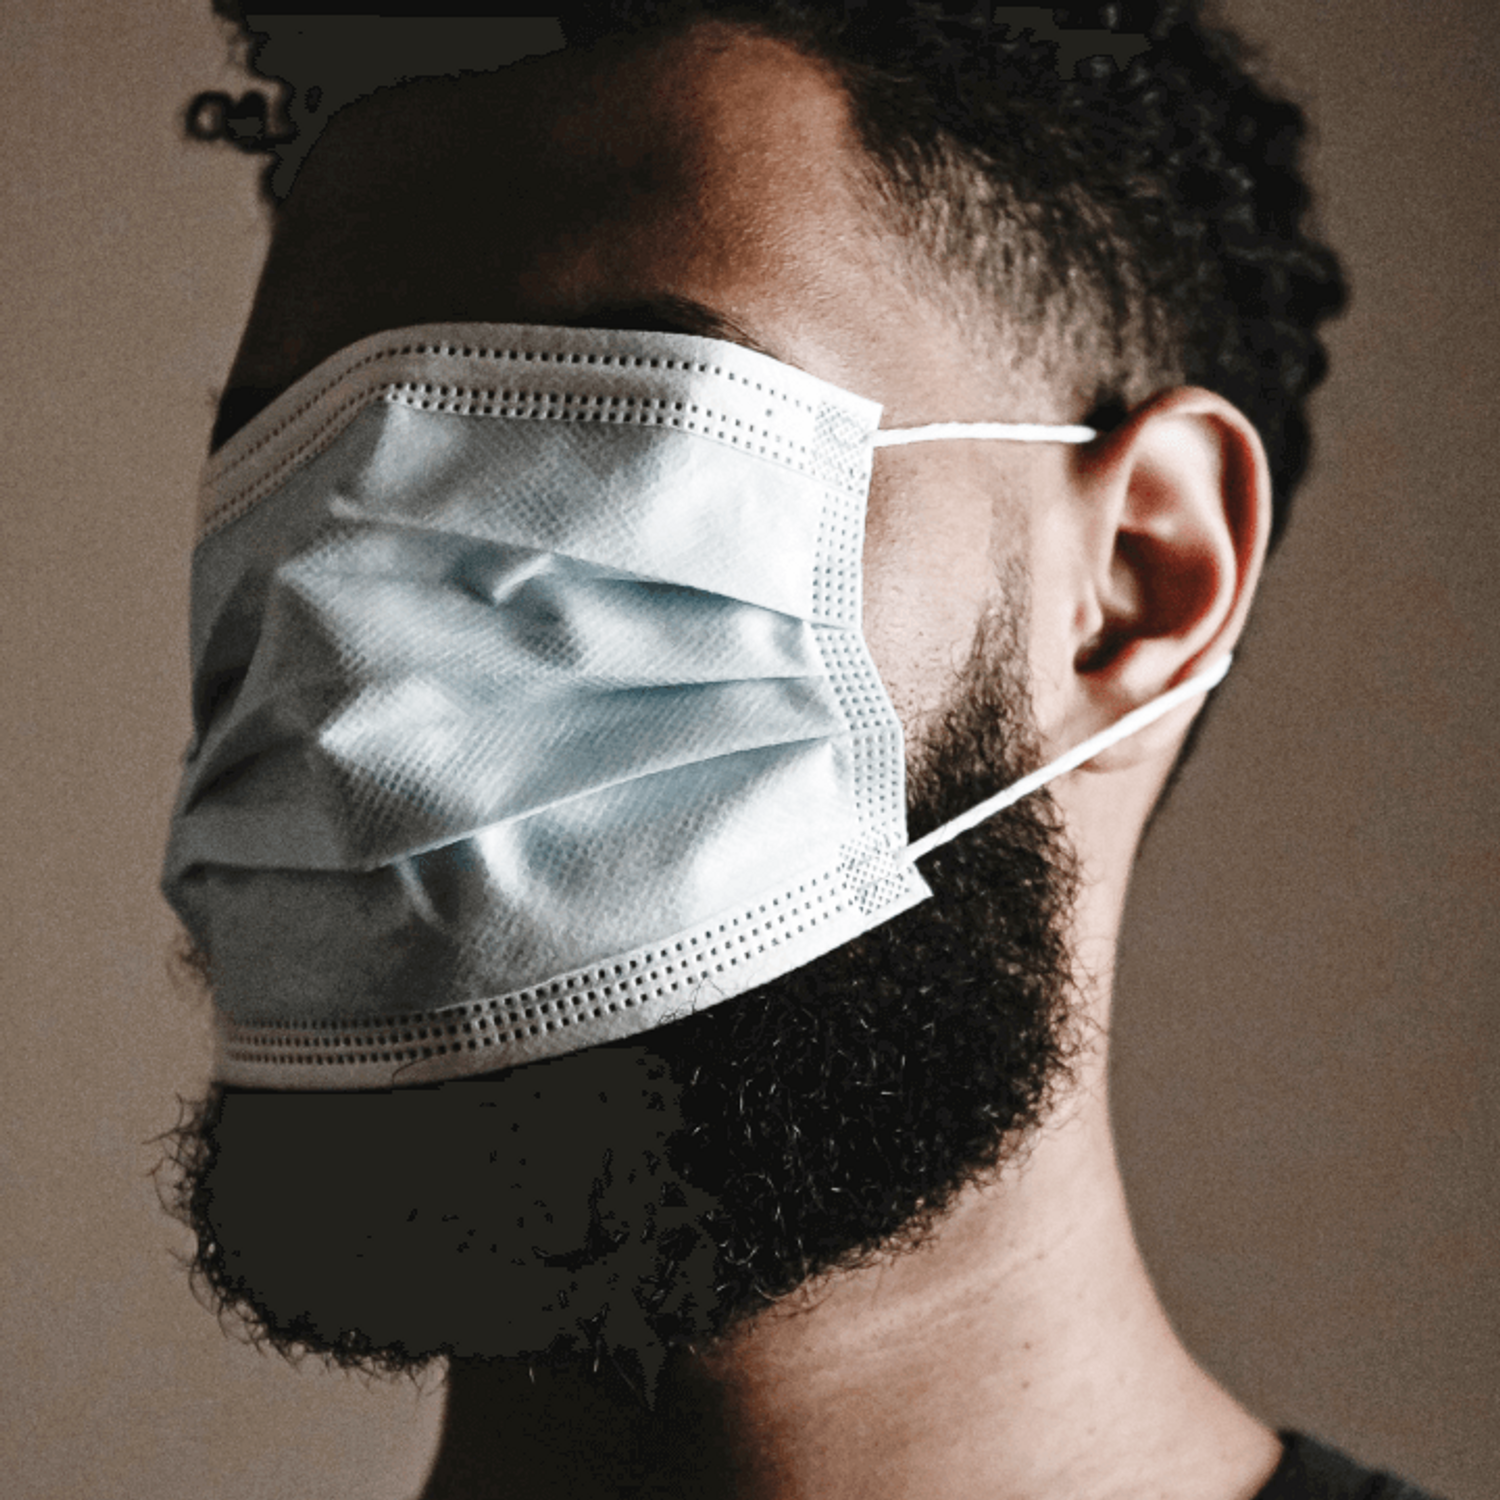 Le masque chirurgical rendrait plus séduisant ?